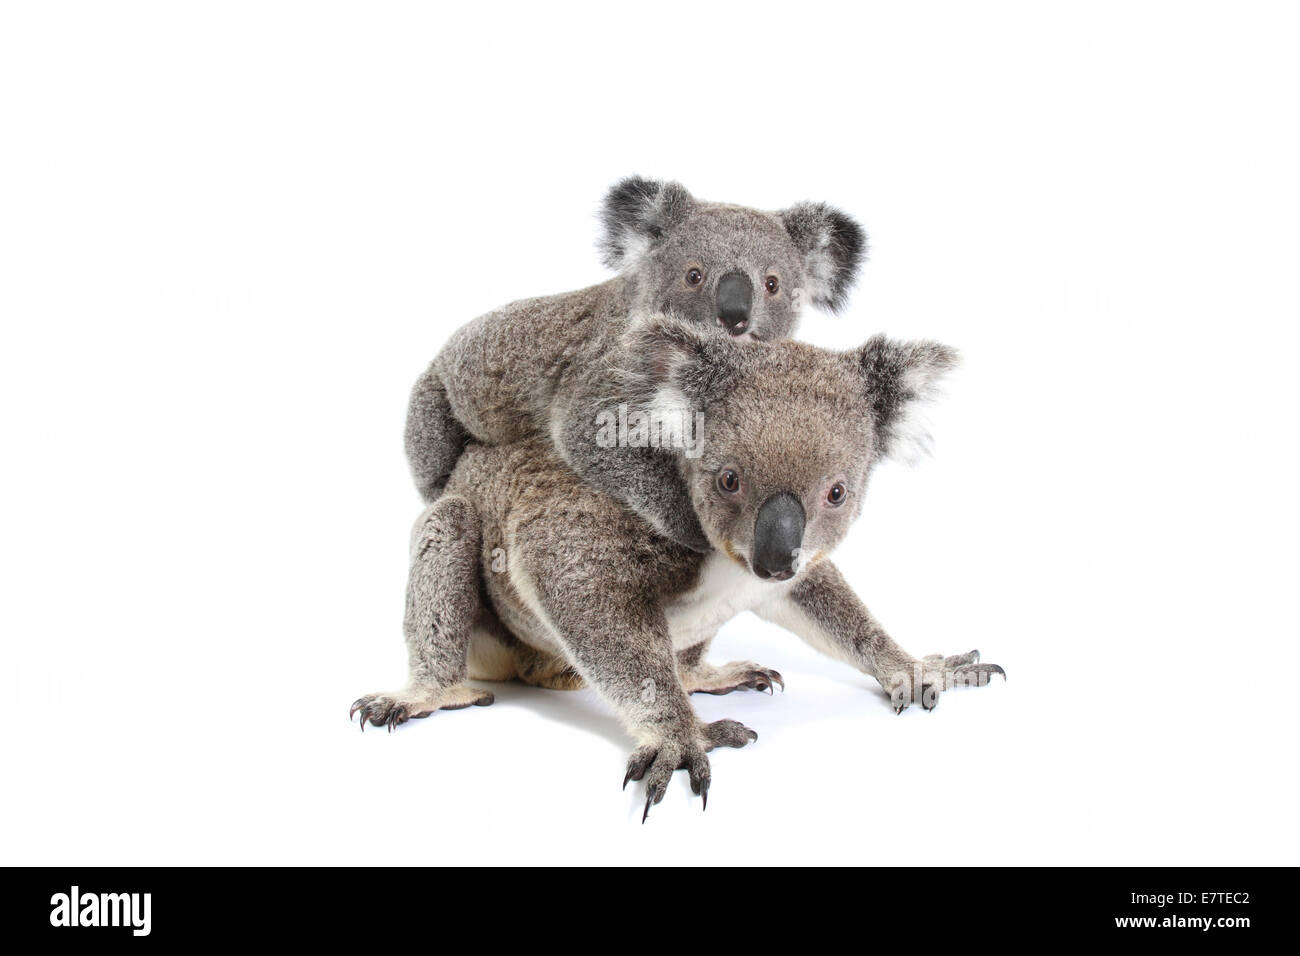 Koala (Phascolarctos cinereus), female with pup Stock Photo